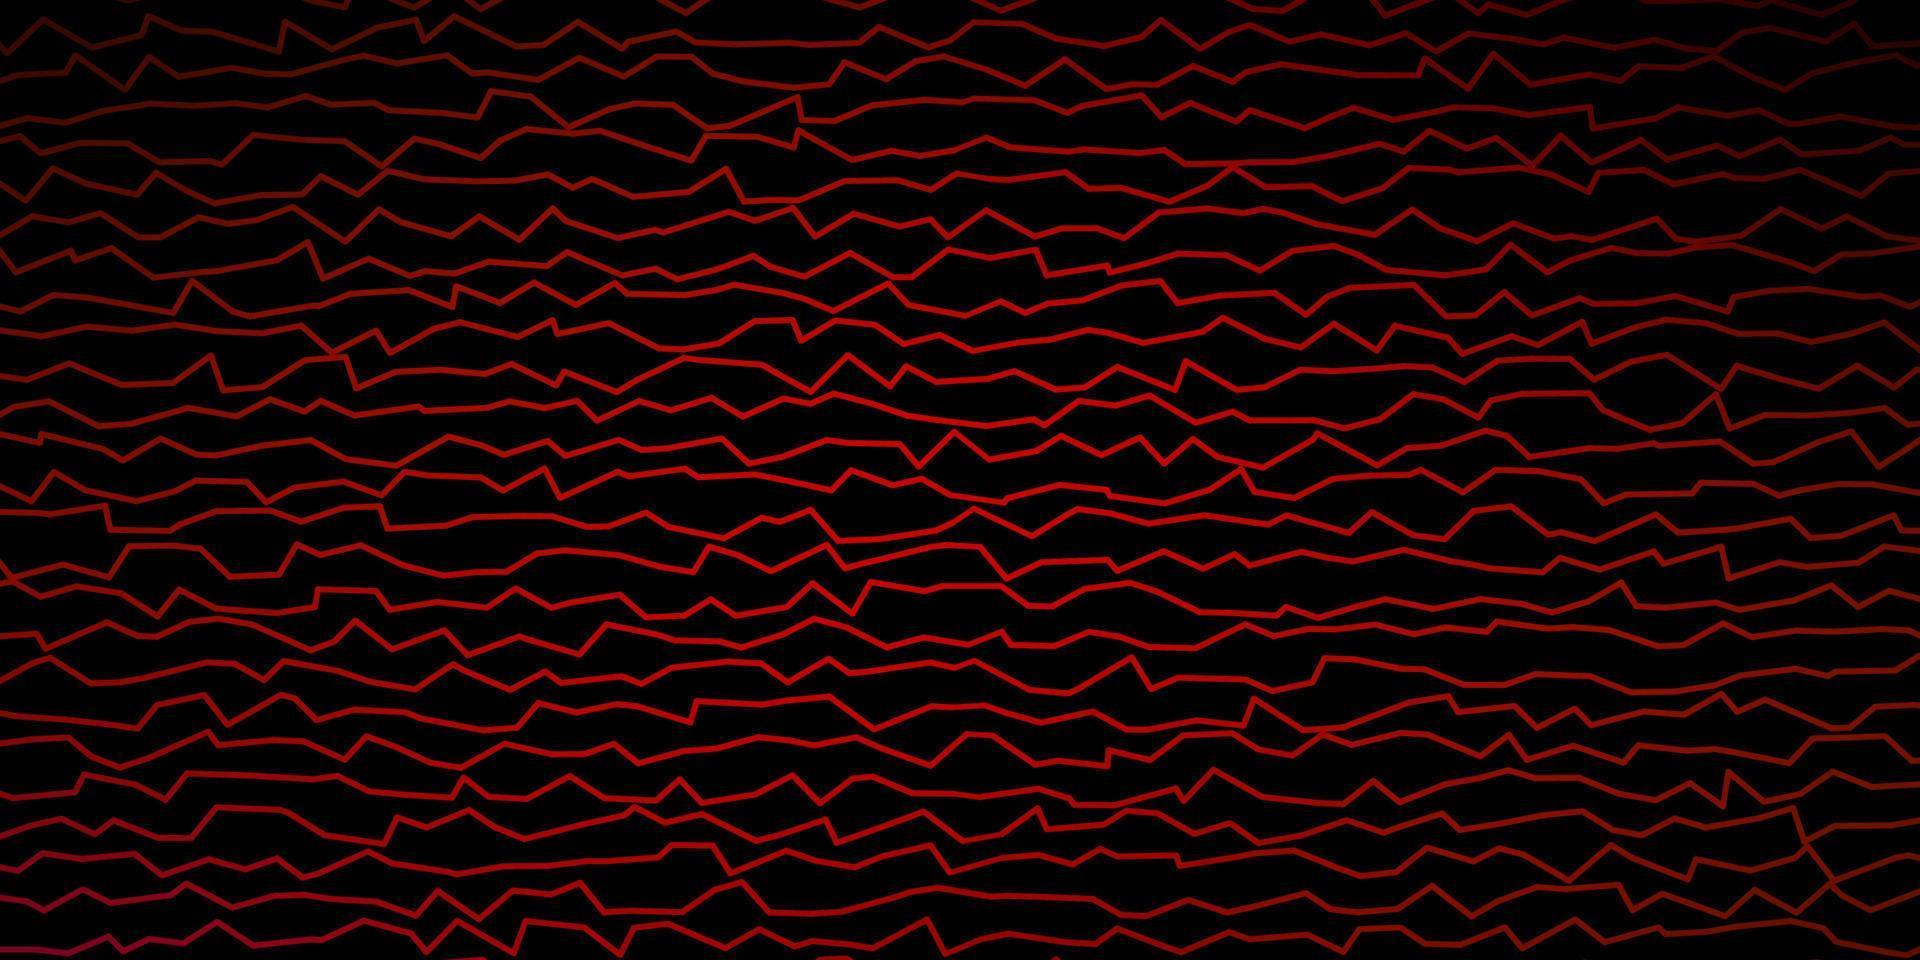 padrão de vetor vermelho escuro com linhas.